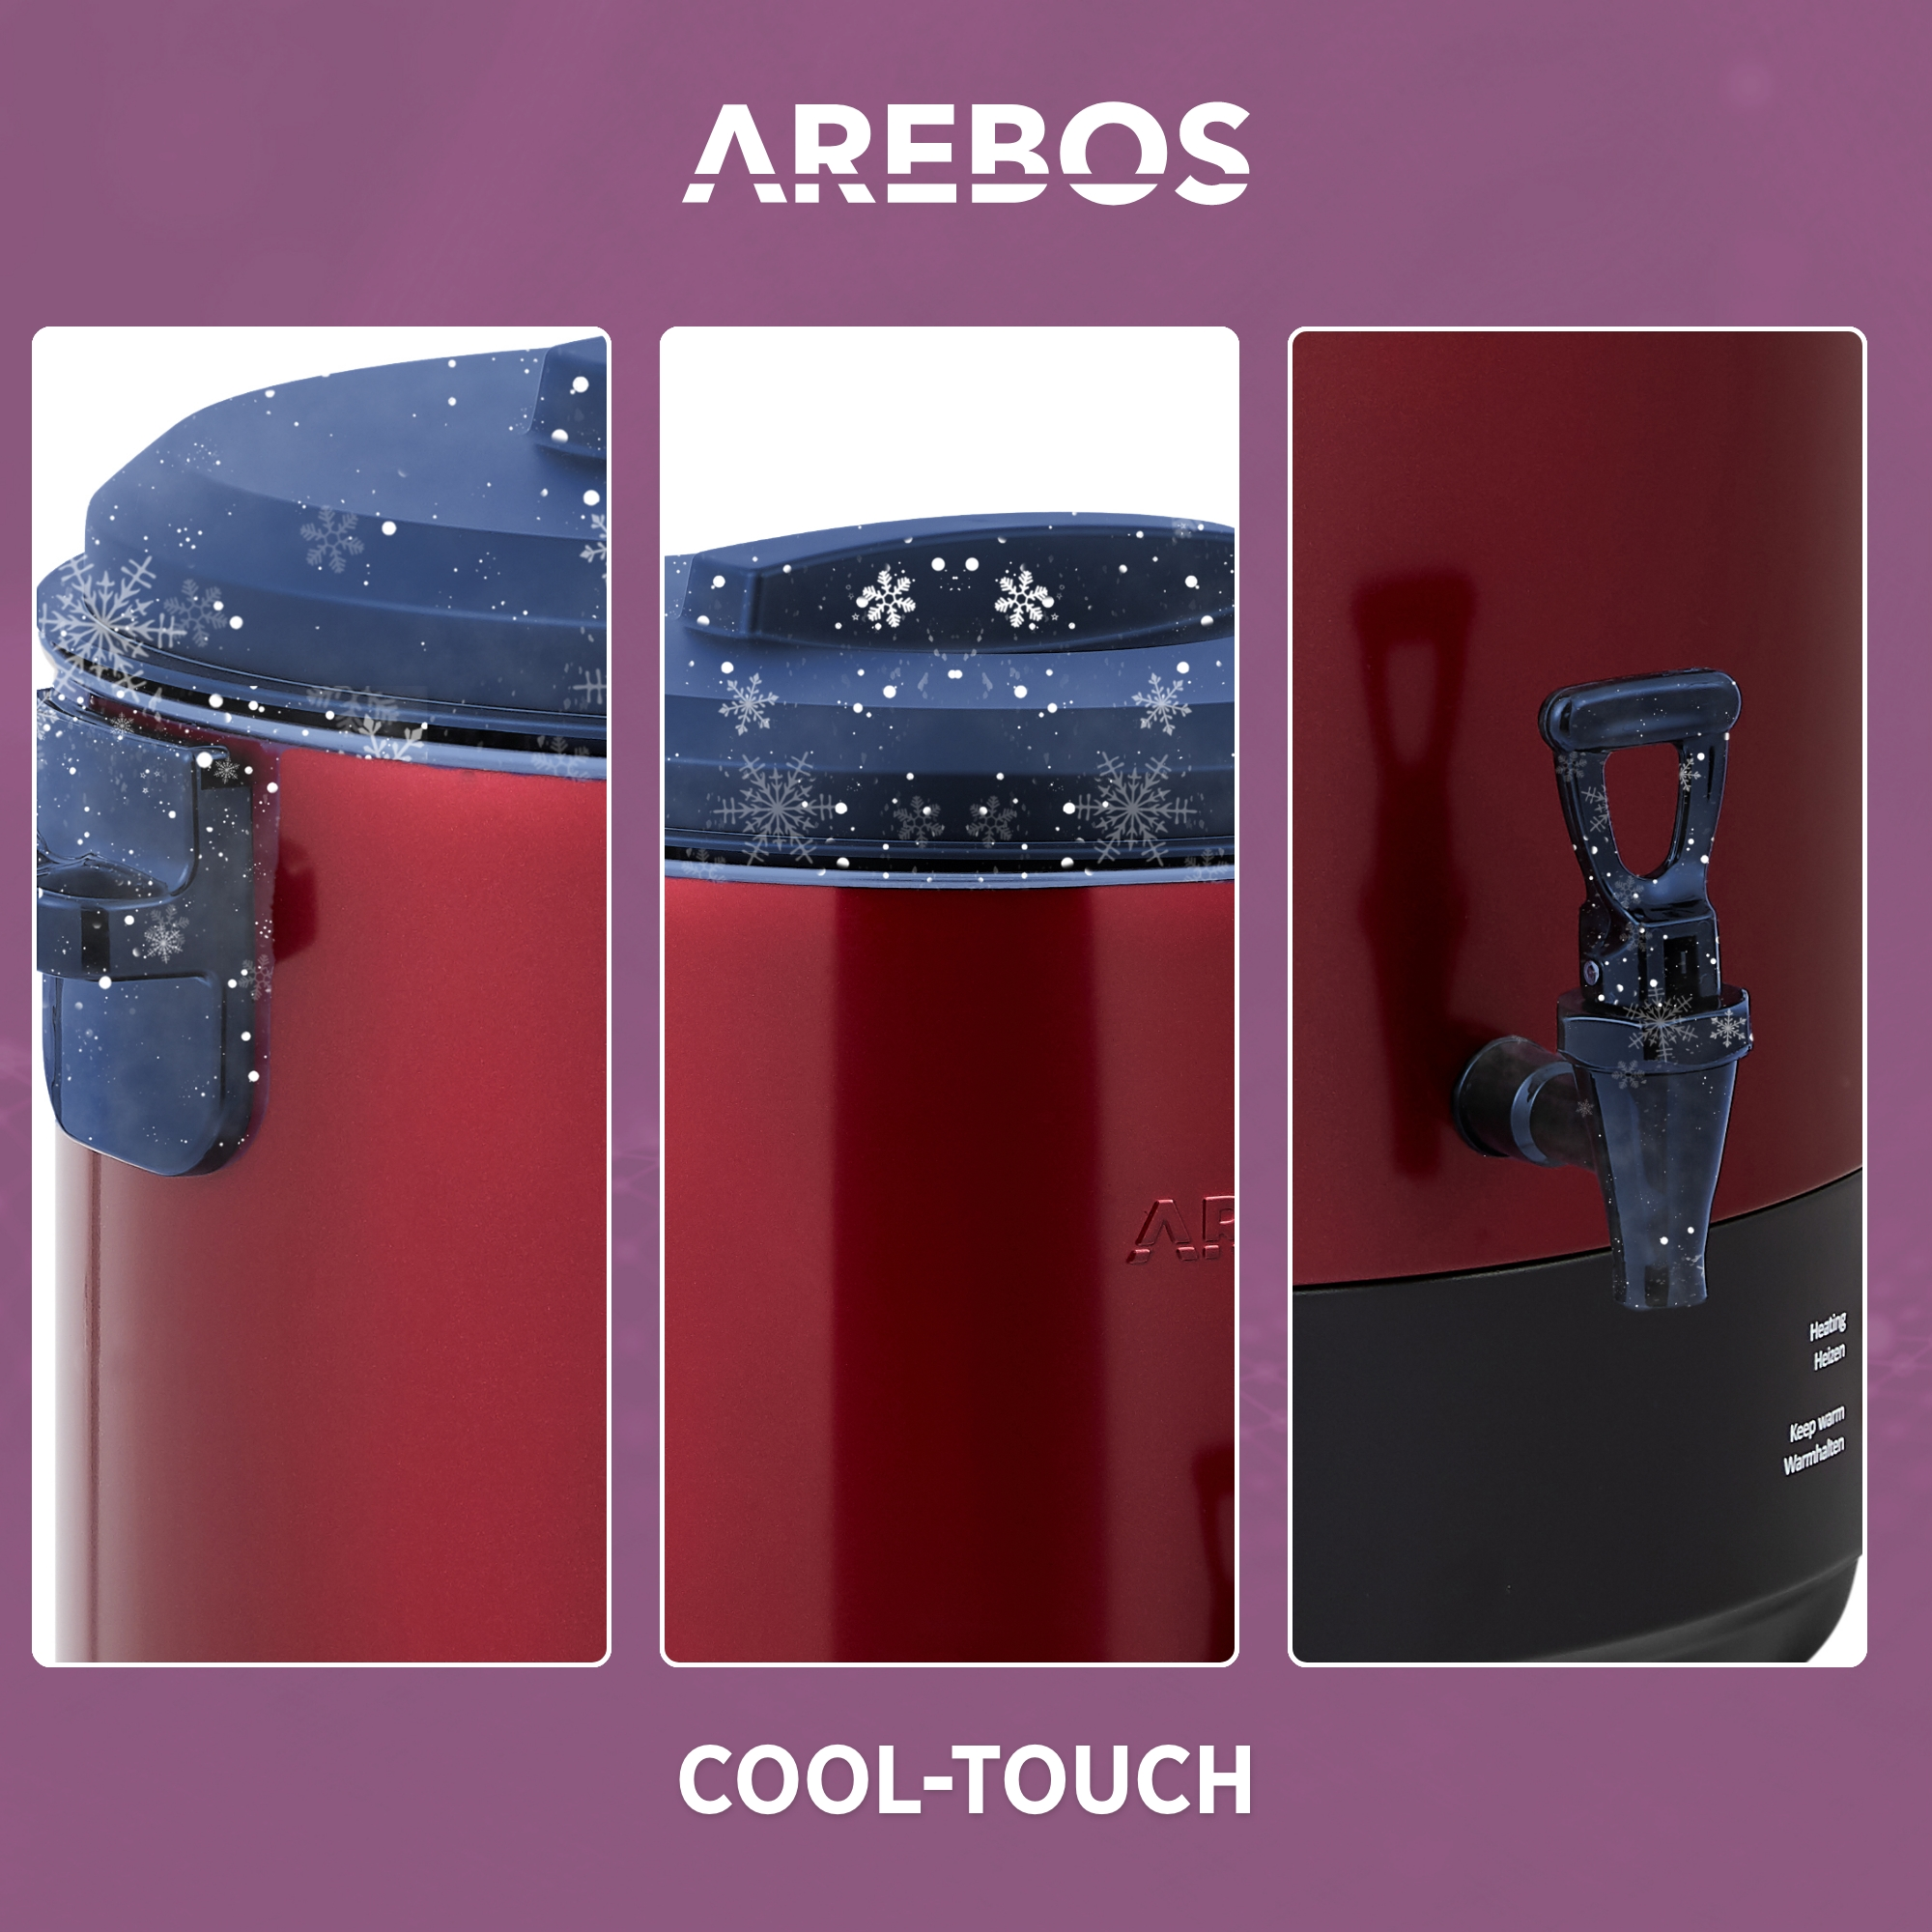 Einkochautomat Heißgetränke AREBOS Spender (1800 Watt)